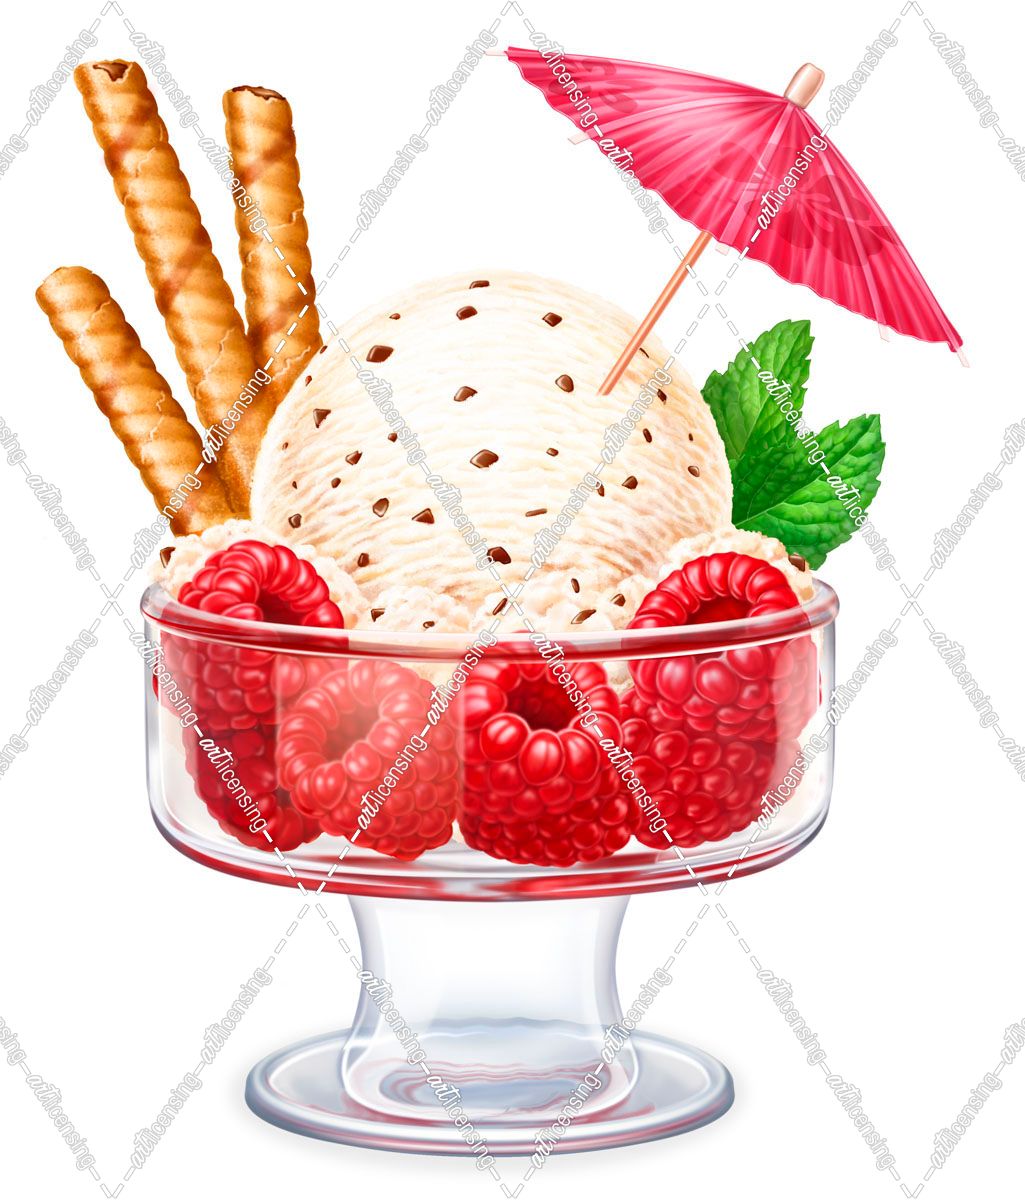 Ice Cream with Rasberries